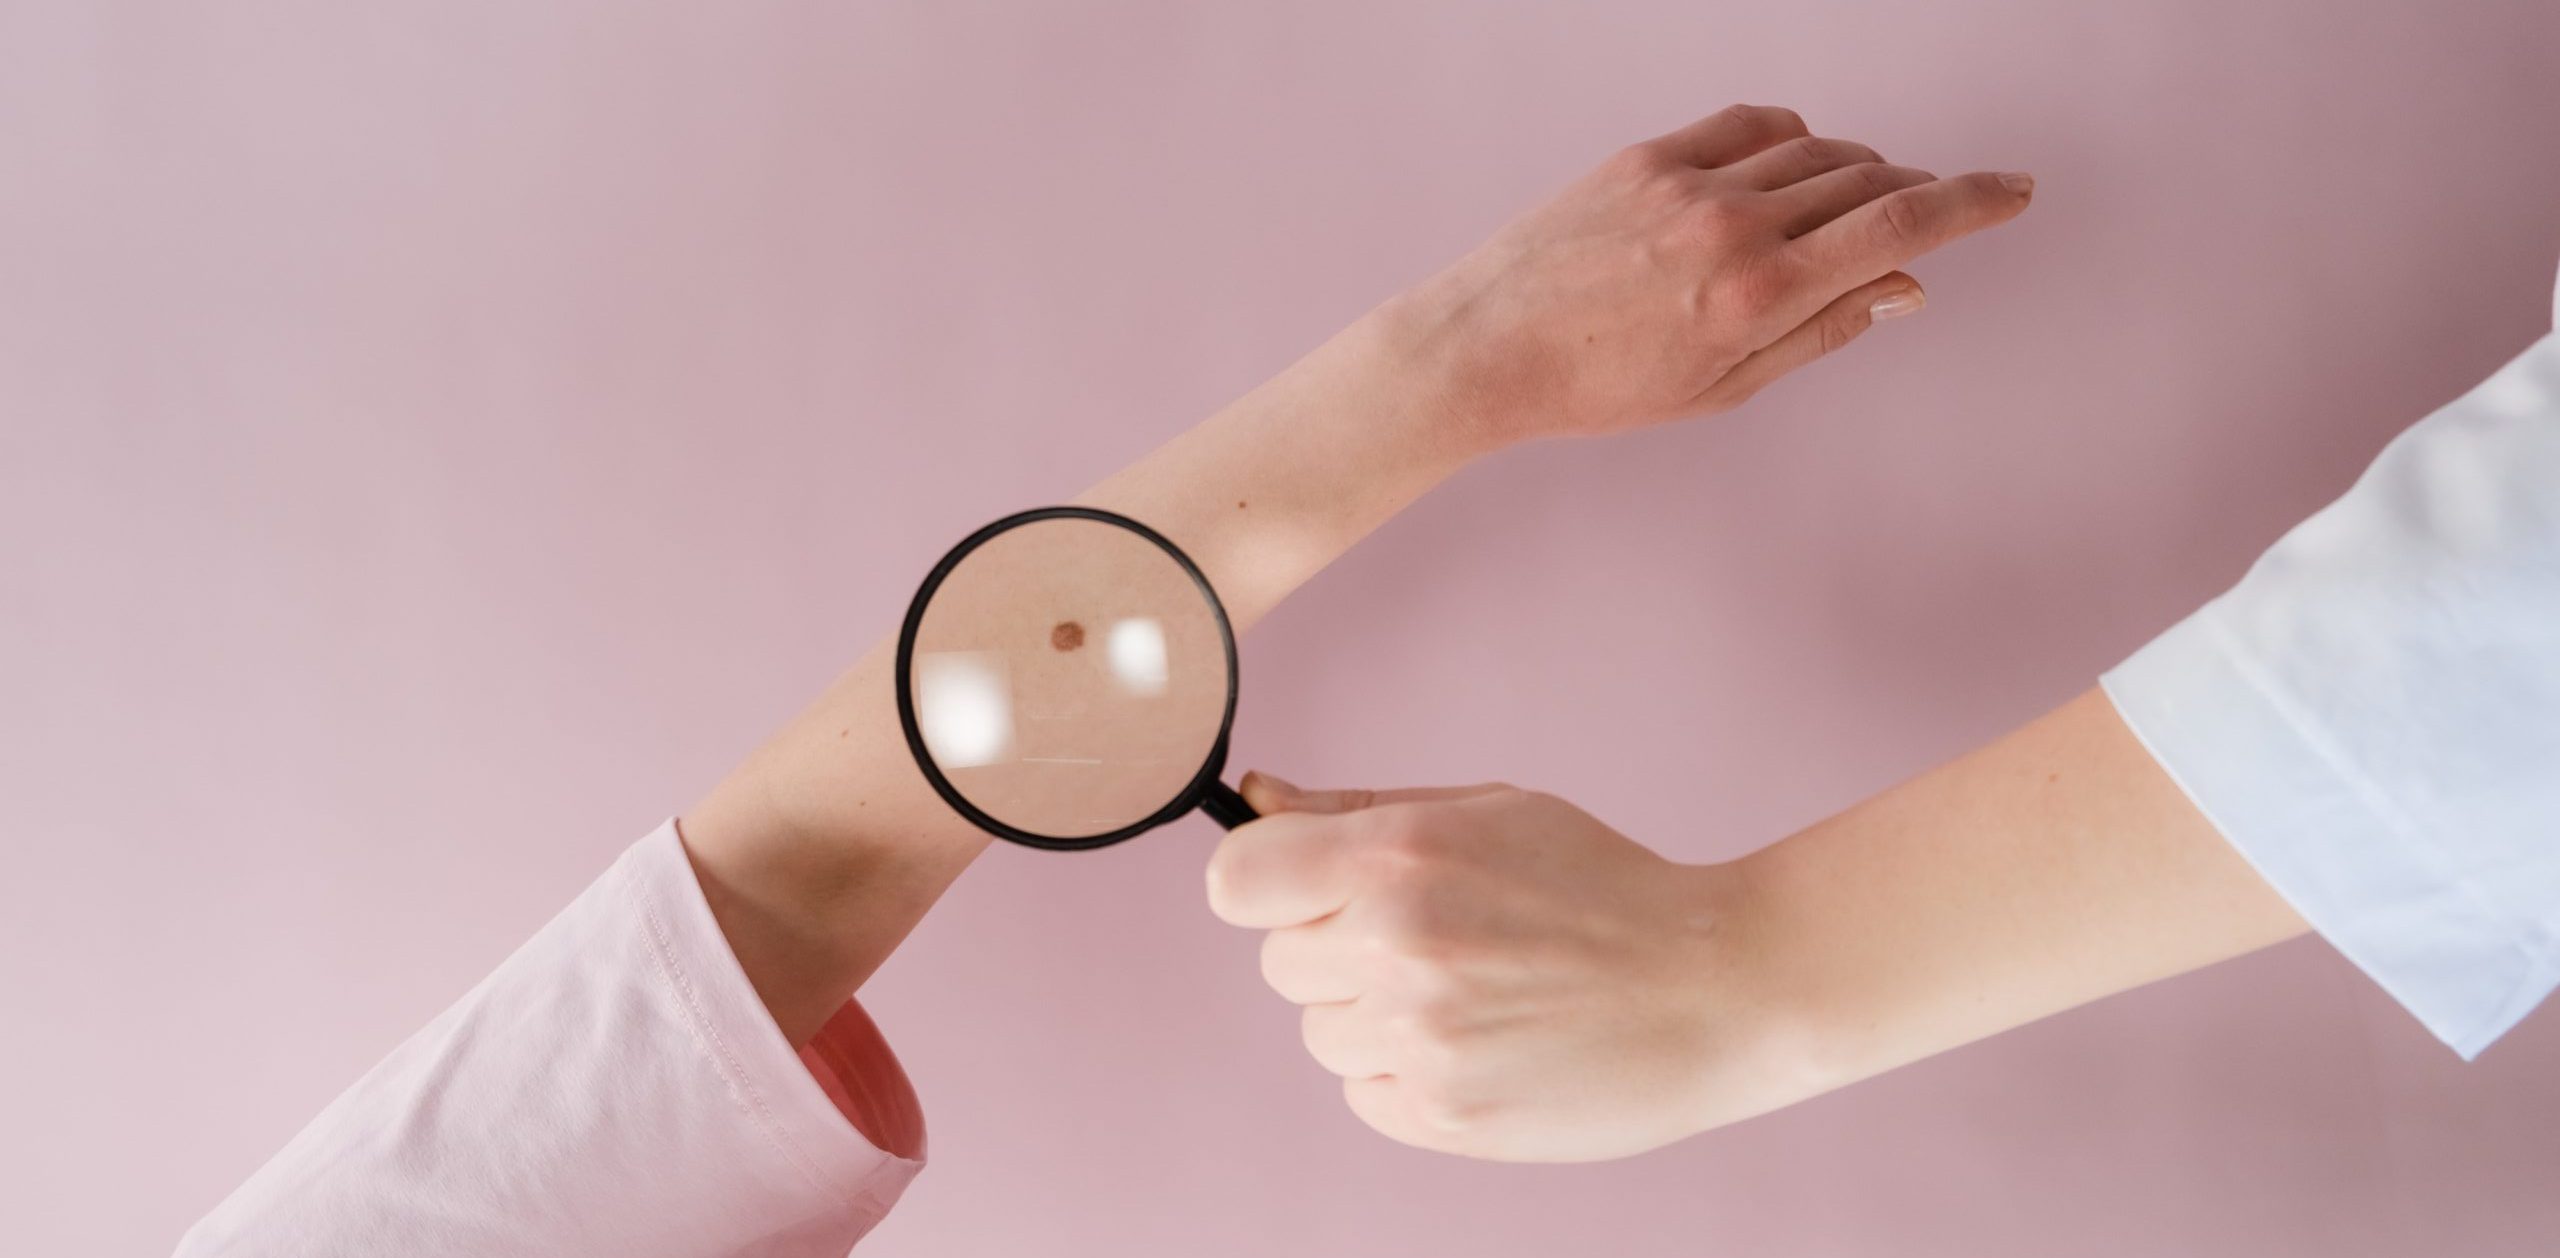 Signos de alarma para detectar el cáncer de piel y cómo prevenirlo